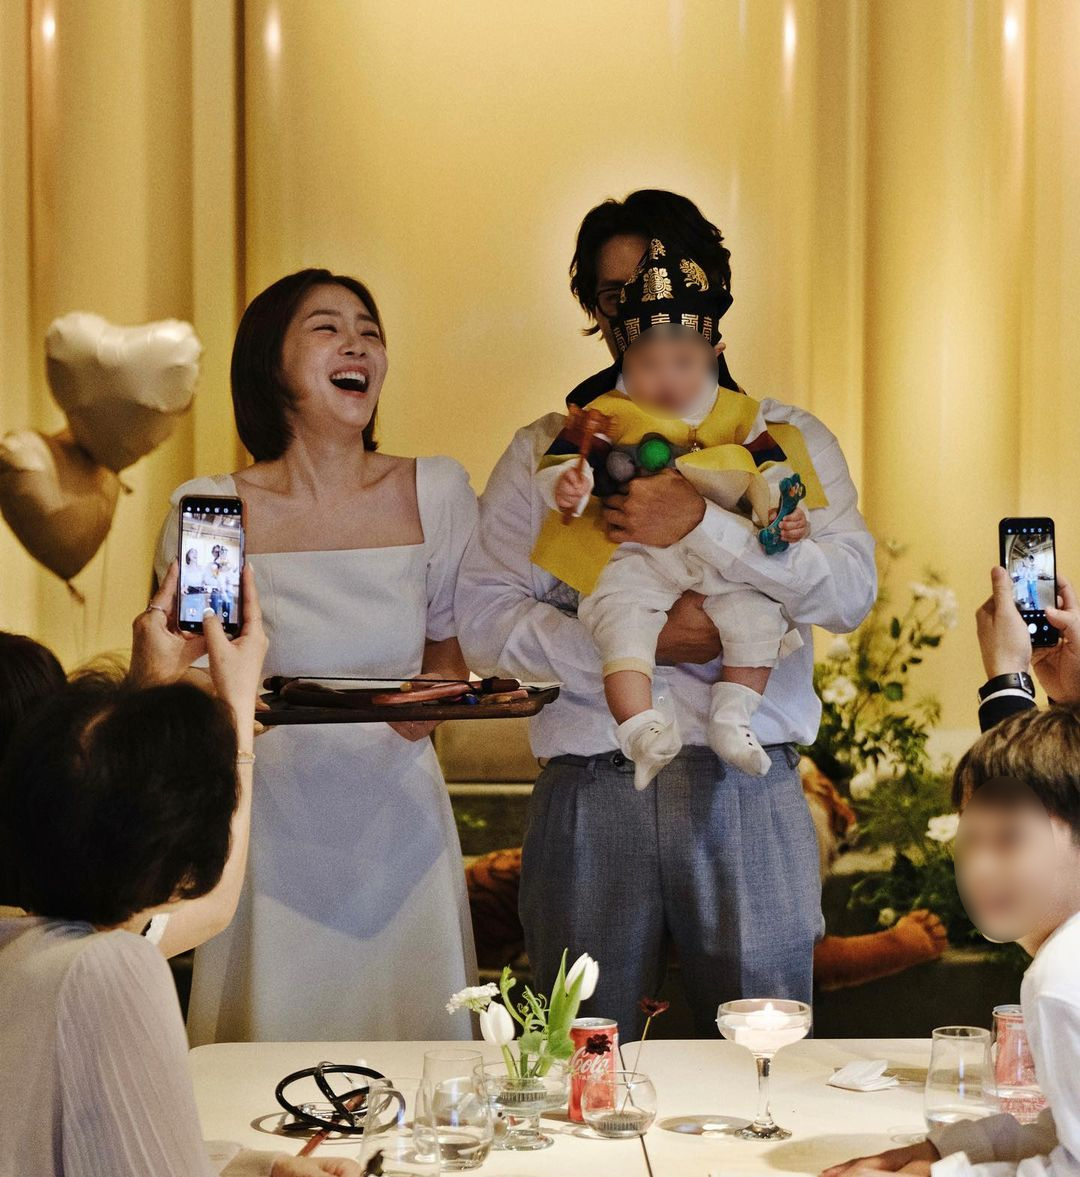 シン・ダウン、結婚6年目で誕生した息子の満1歳の誕生祝いの写真公開